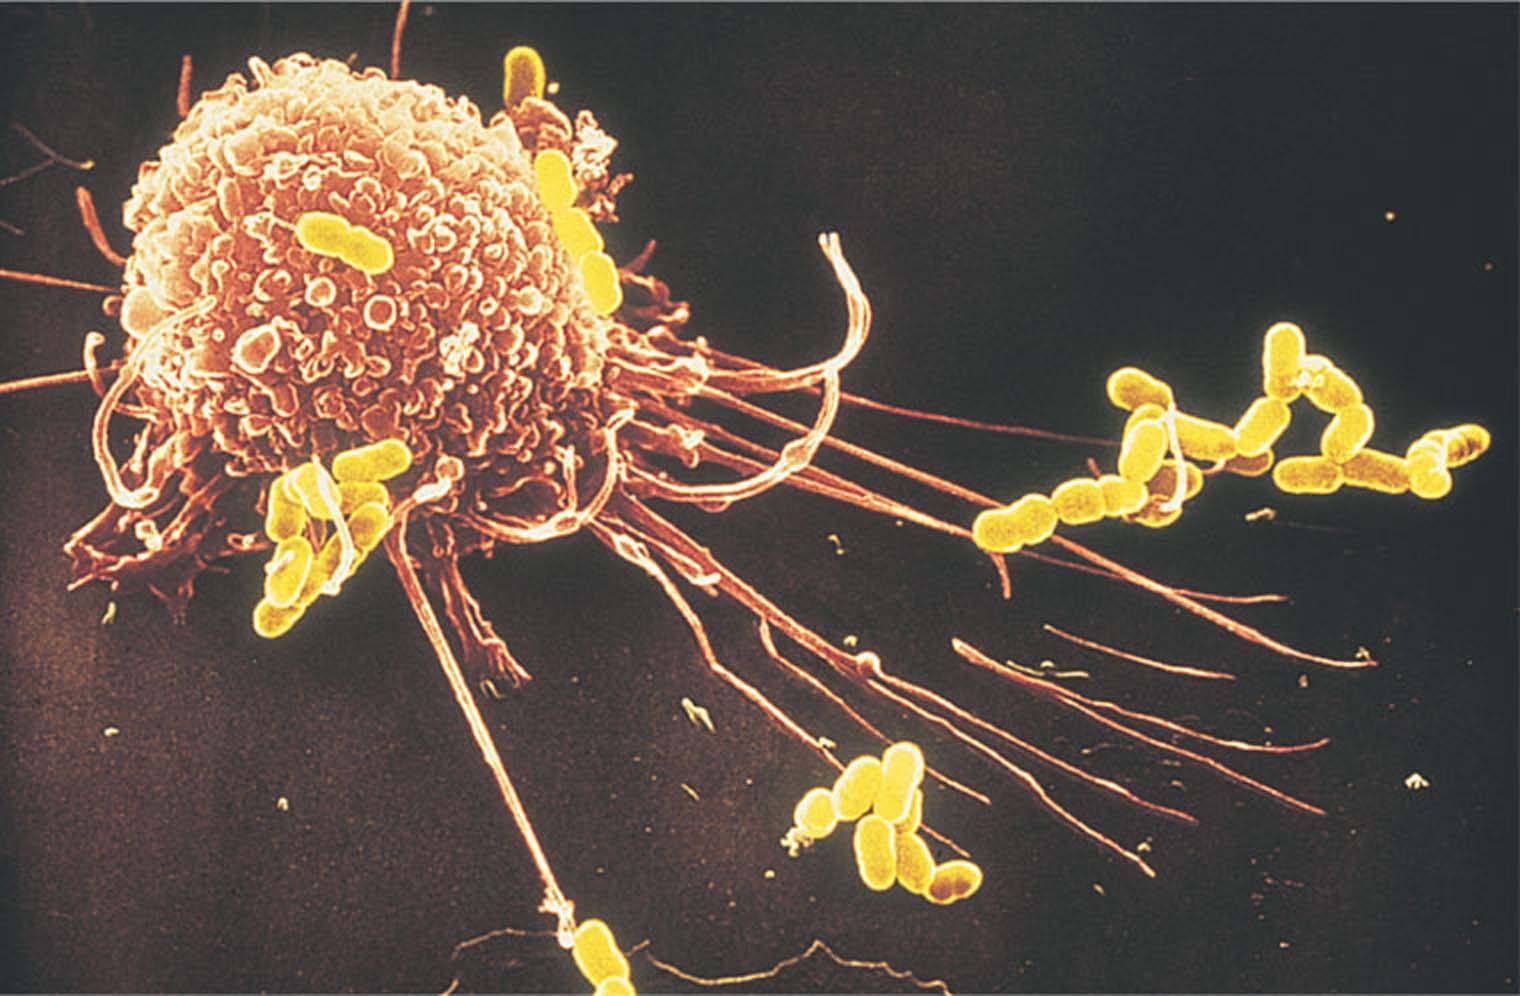 美科学家确认癌细胞可“远程缴械”免疫系统